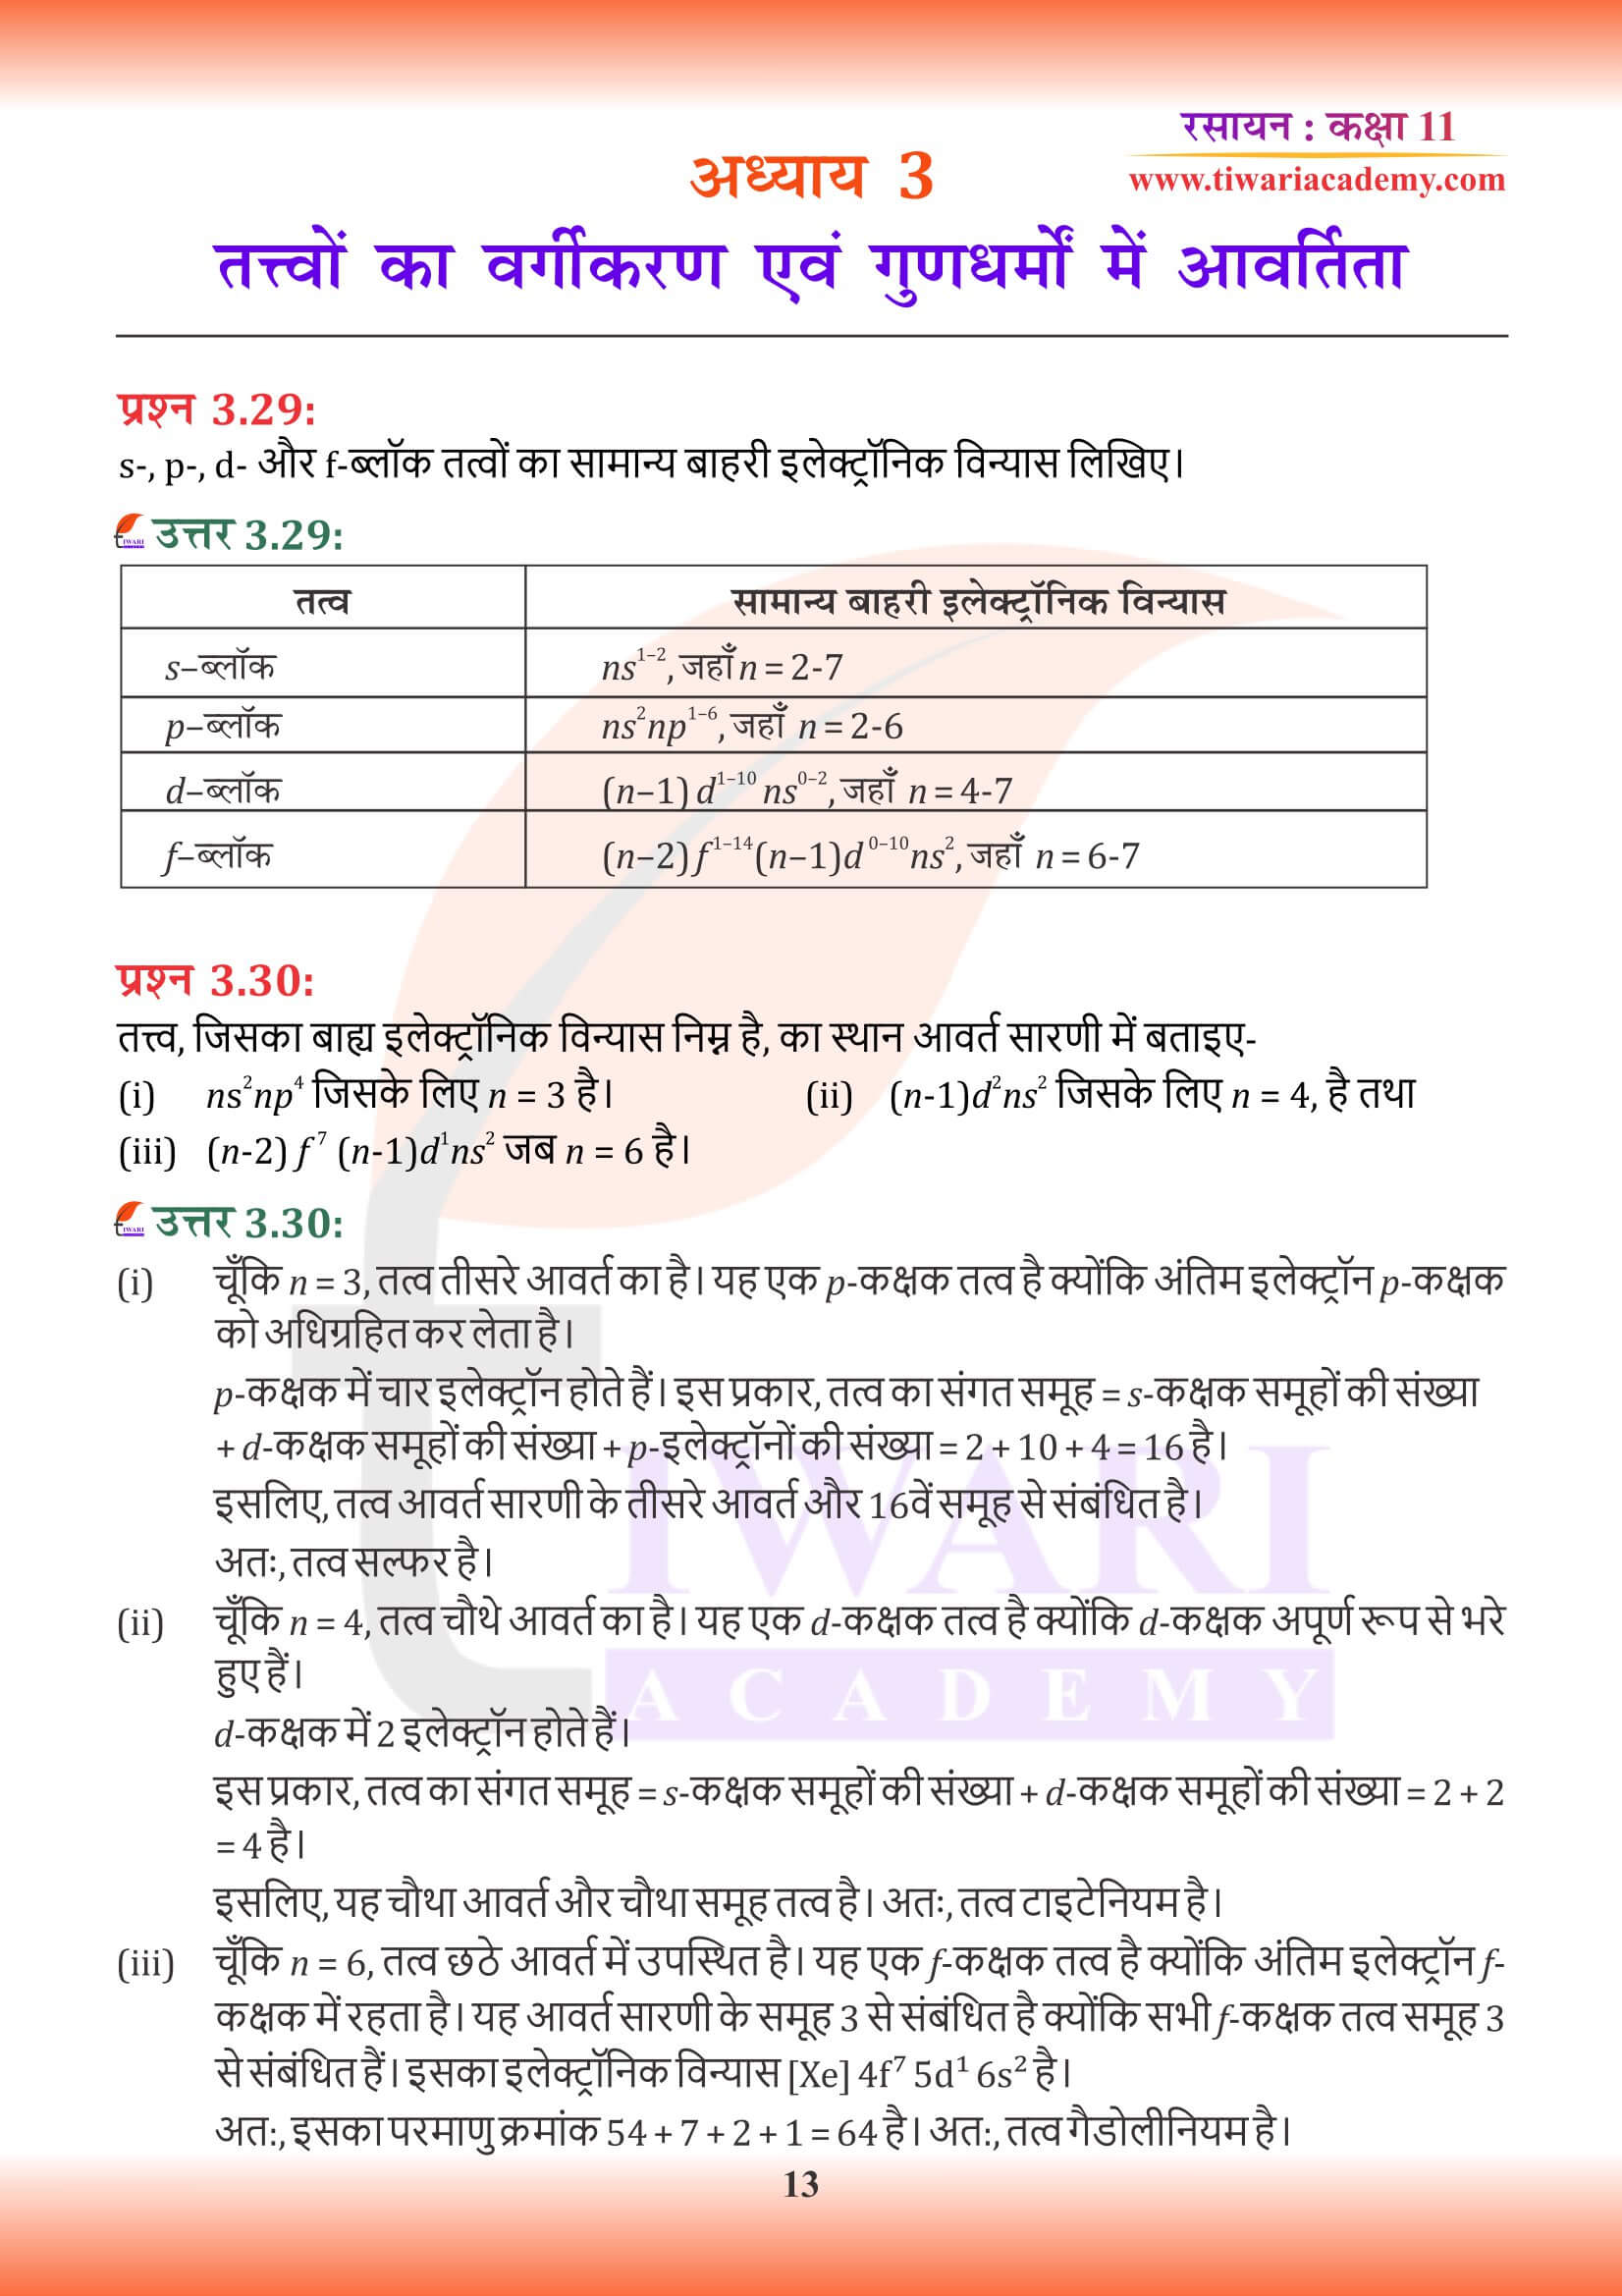 कक्षा 11 रसायन अध्याय 3 हिंदी में गाइड